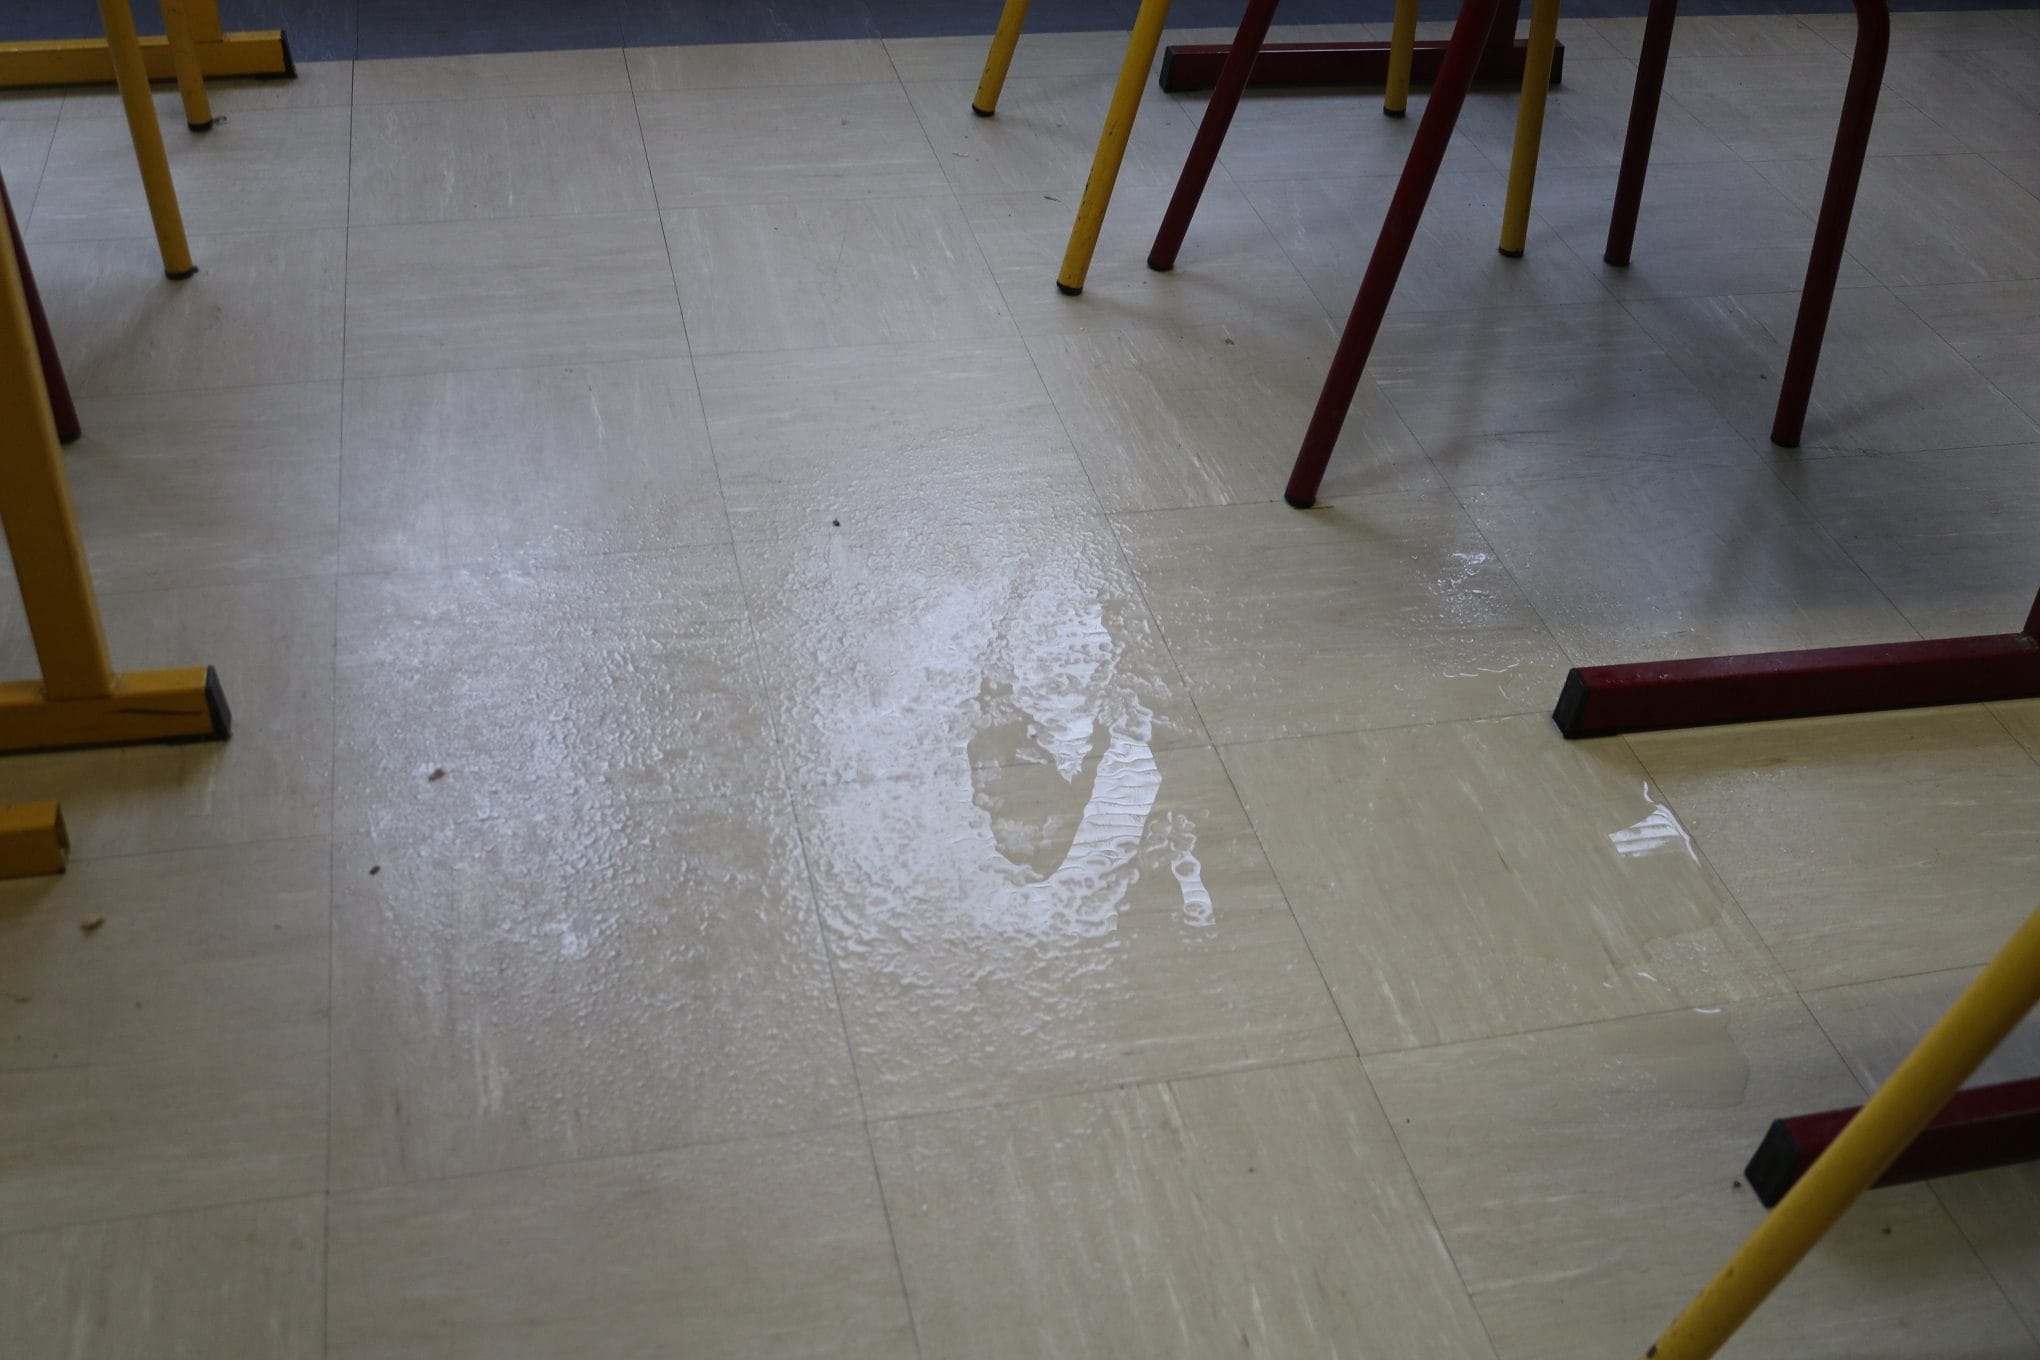 Le trou dans le plafond d'une salle de classe du "Platane" laisse passer l'eau en ce jour de pluie (Photo DL/Rue 89 Strasbourg/cc)